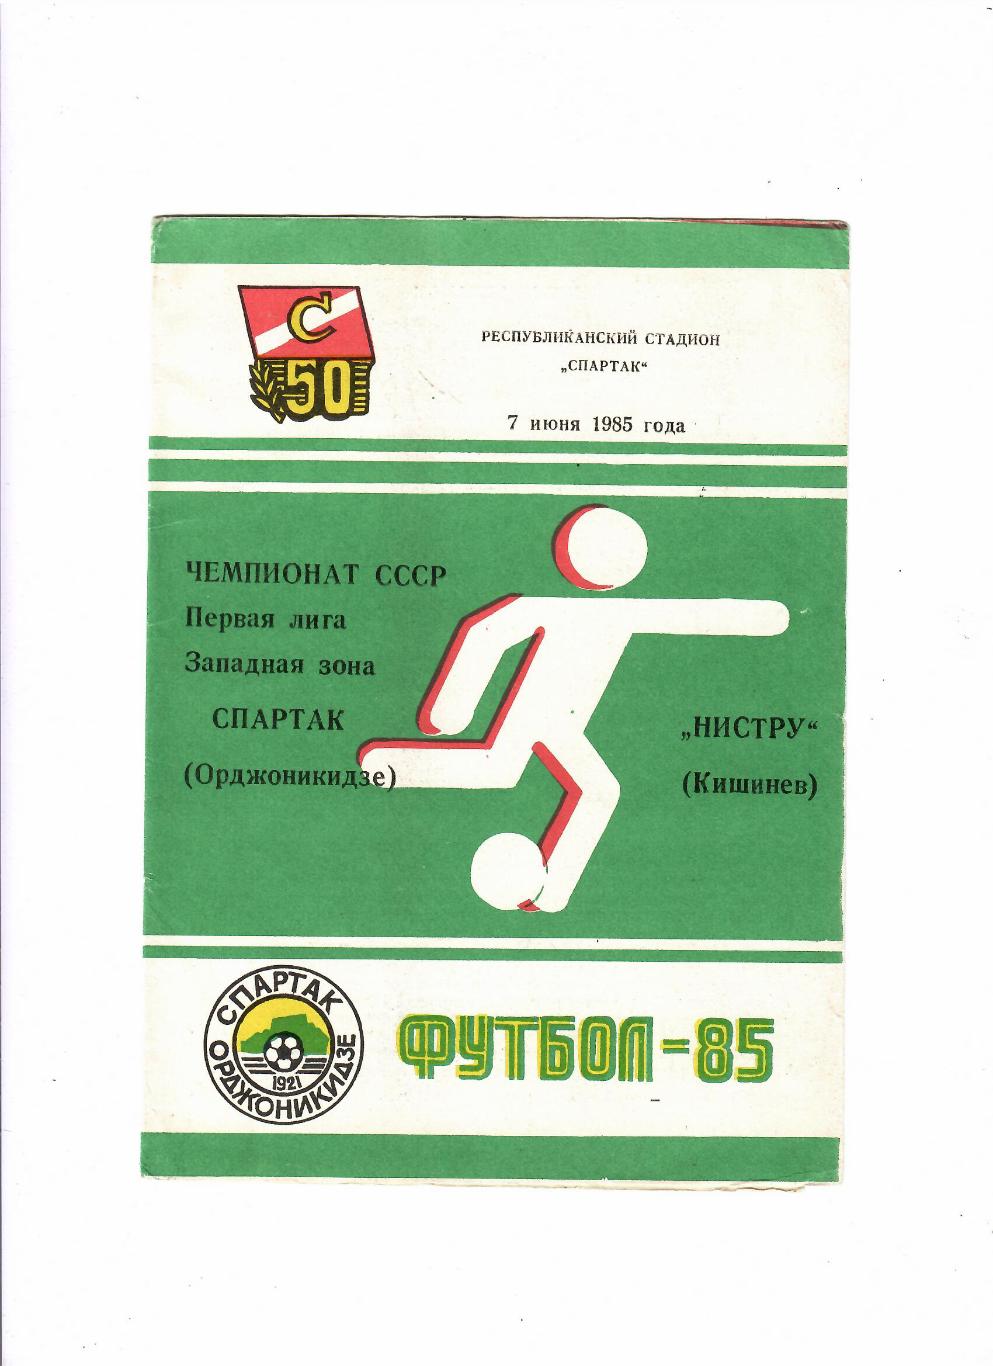 Спартак Орджоникидзе-Нистру Кишинев 1985